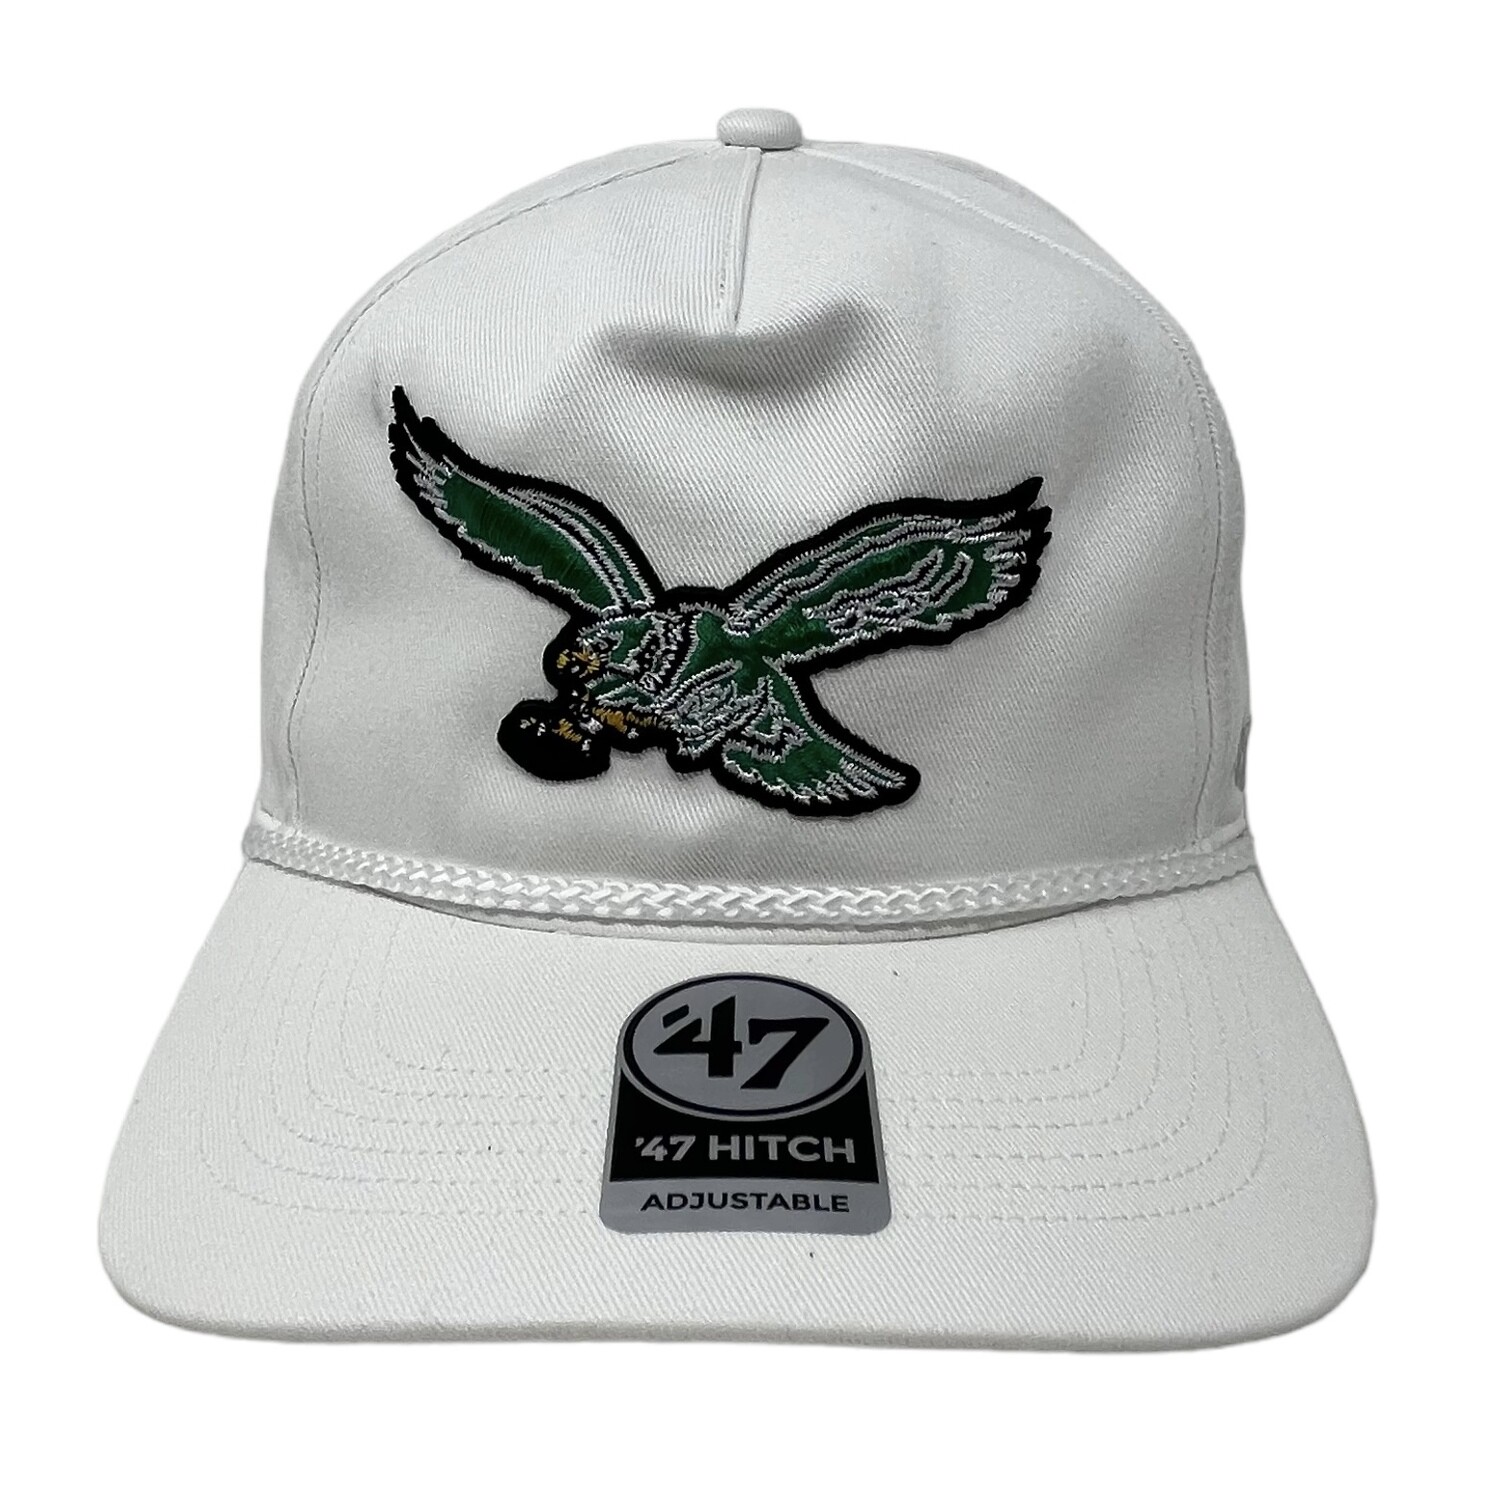 philadelphia eagles baseball cap